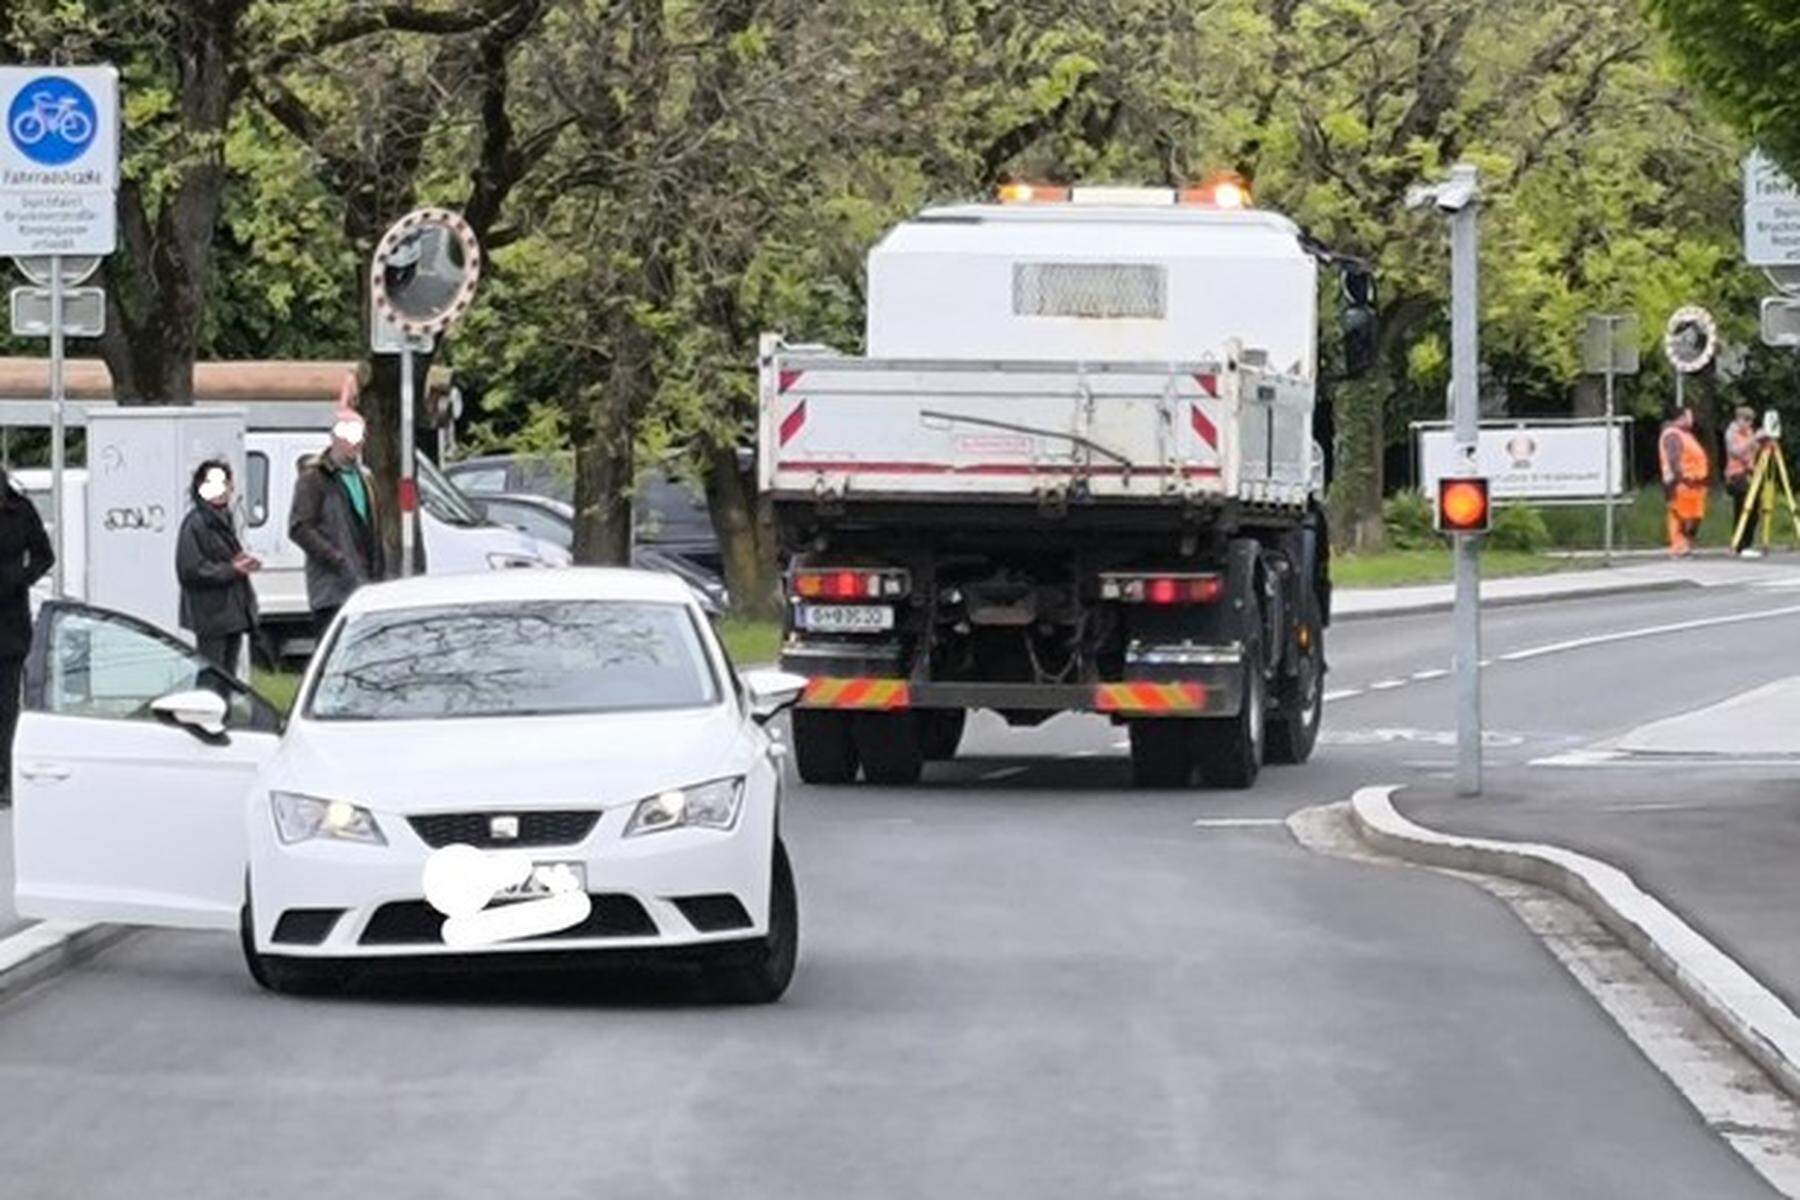 Marburger Straße: Rrrrummms! Erneut kracht Auto gegen Poller in umstrittener Grazer Fahrradstraße